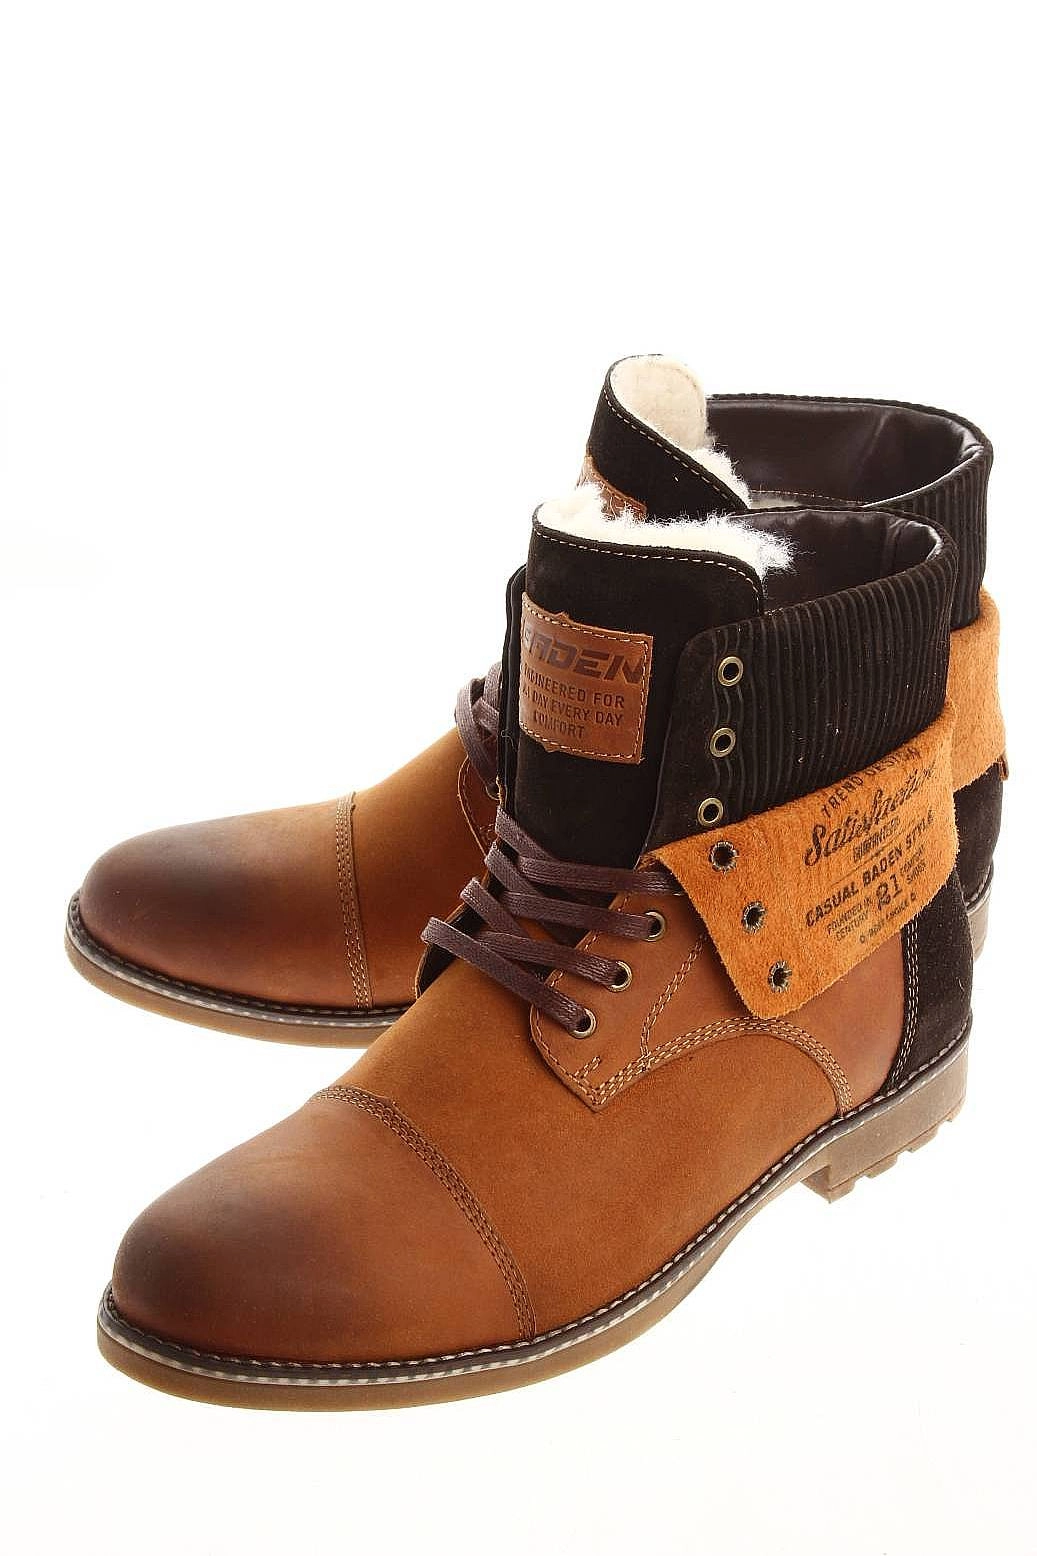 Ботинки Baden коричневые WA004-012 купить в Екатеринбурге за 2750 руб